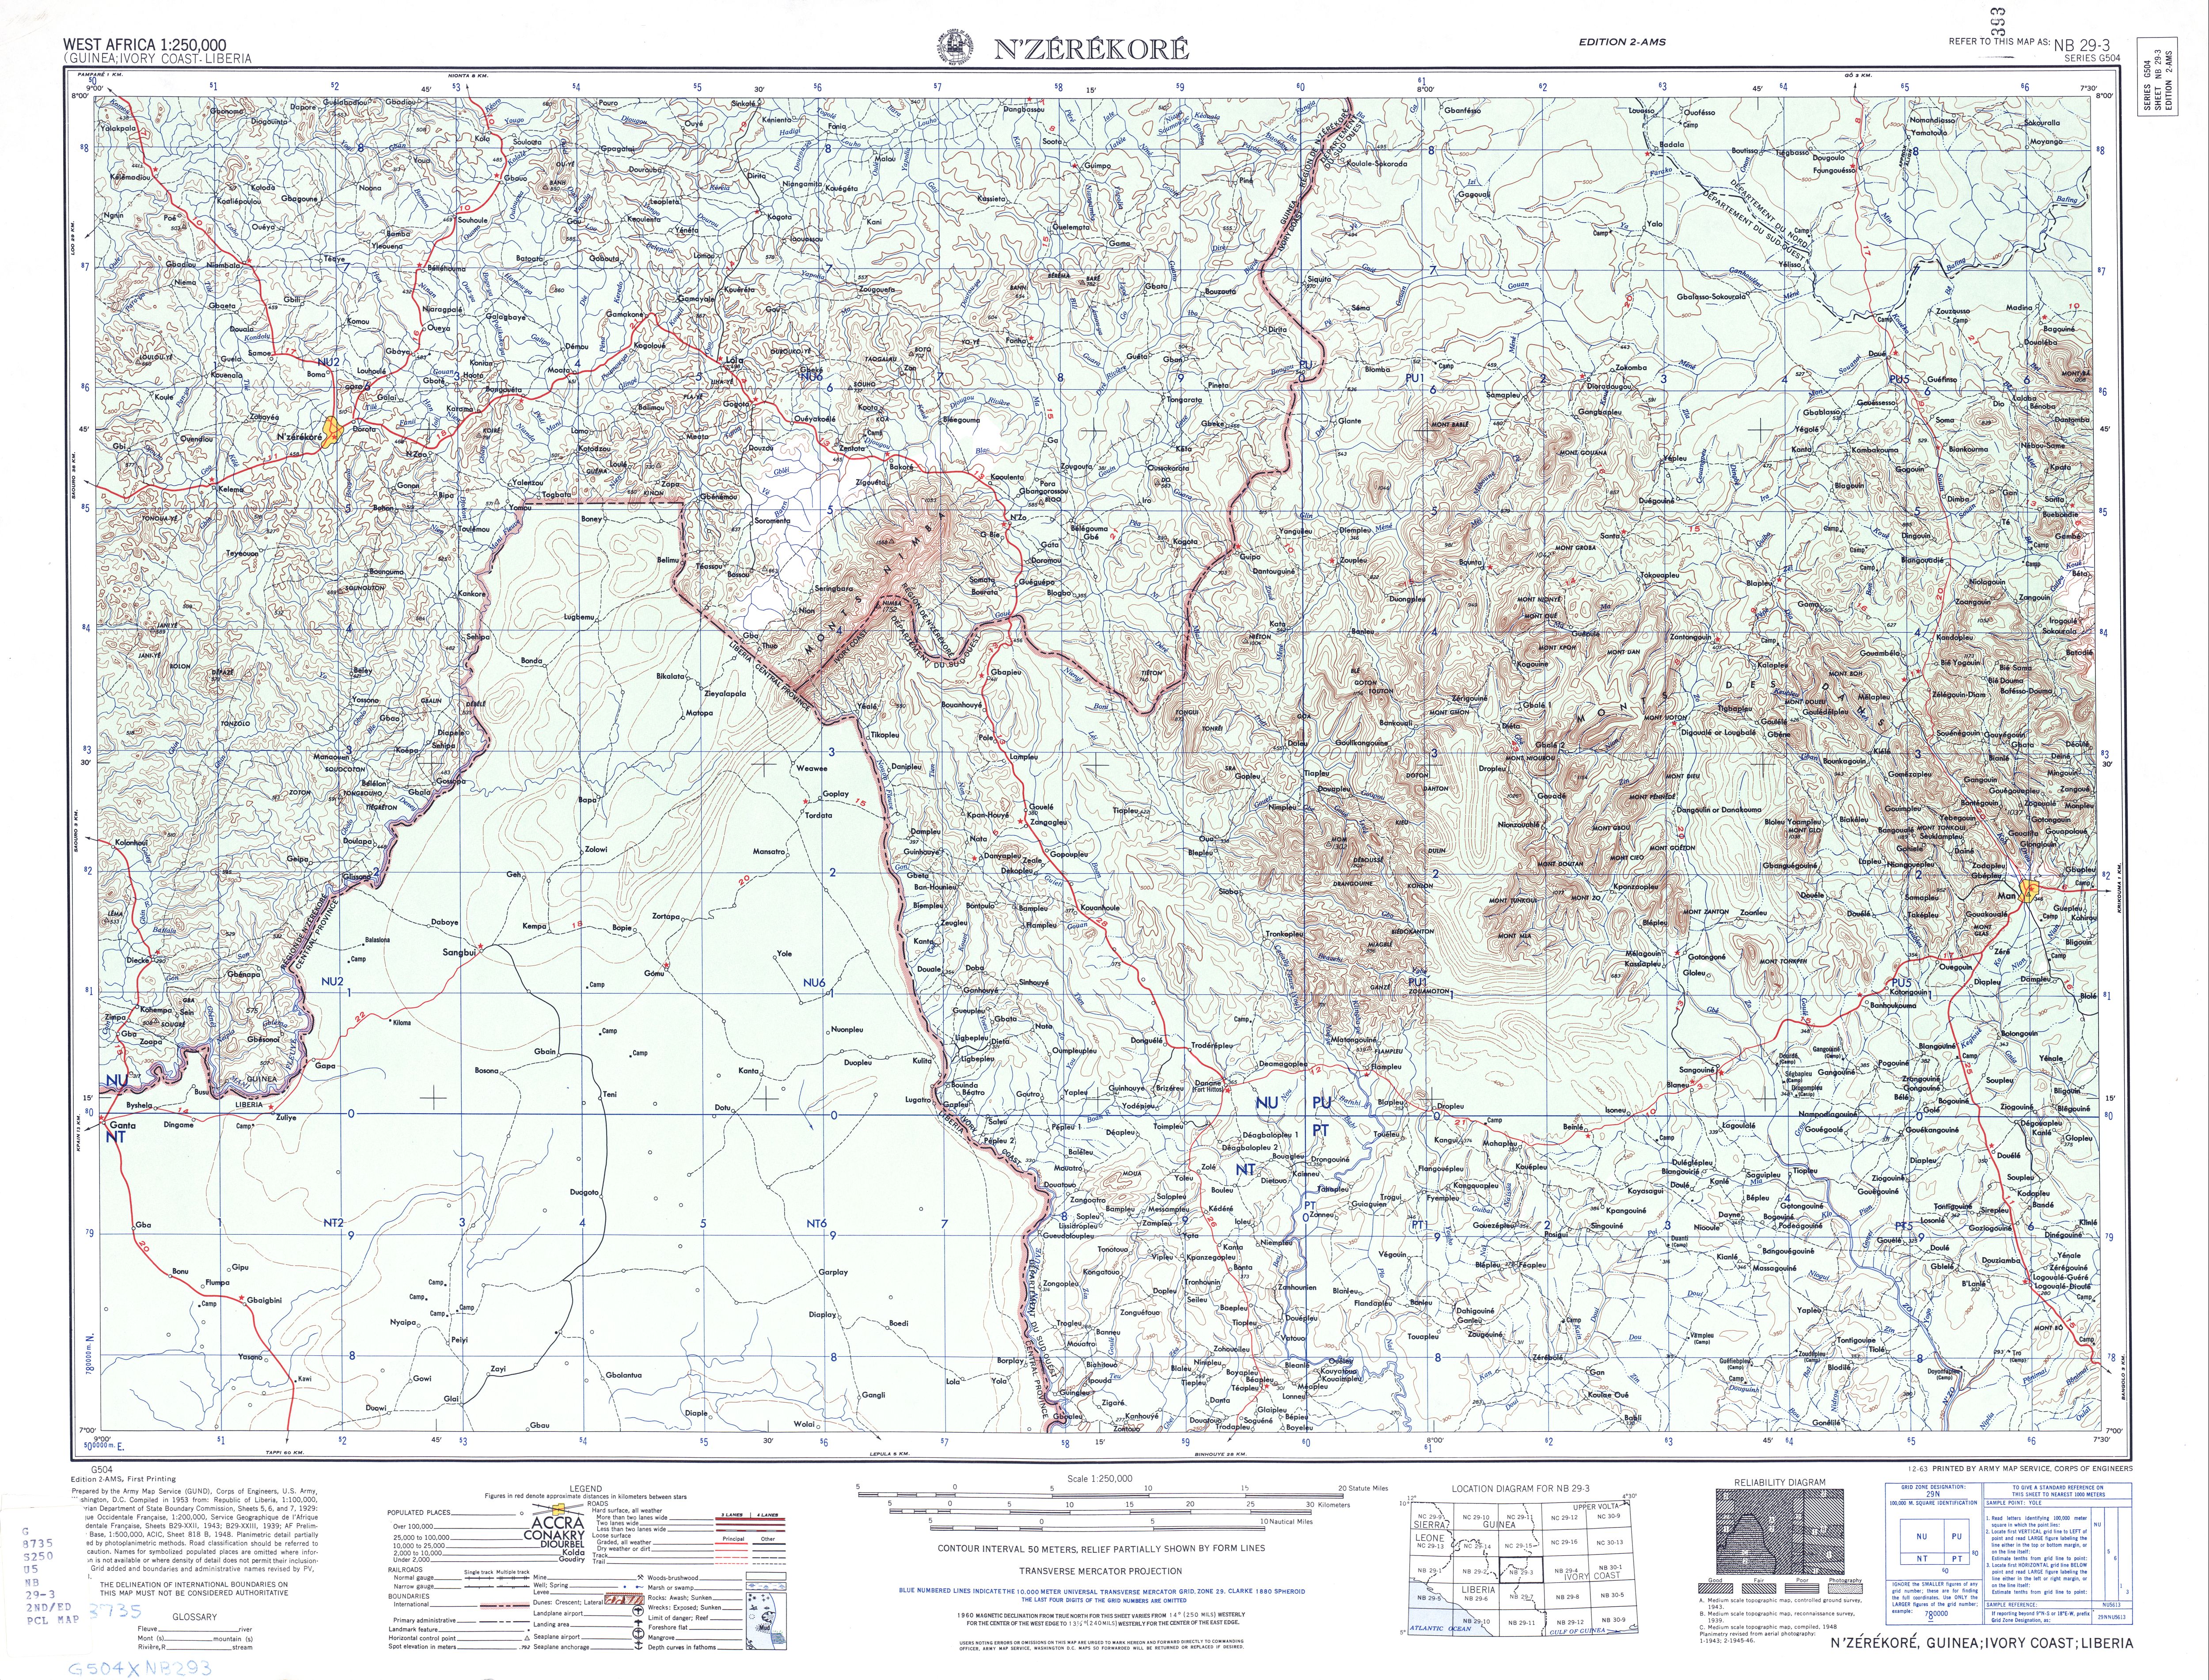 Hoja N'zerekore del Mapa Topográfico de África Occidental 1955